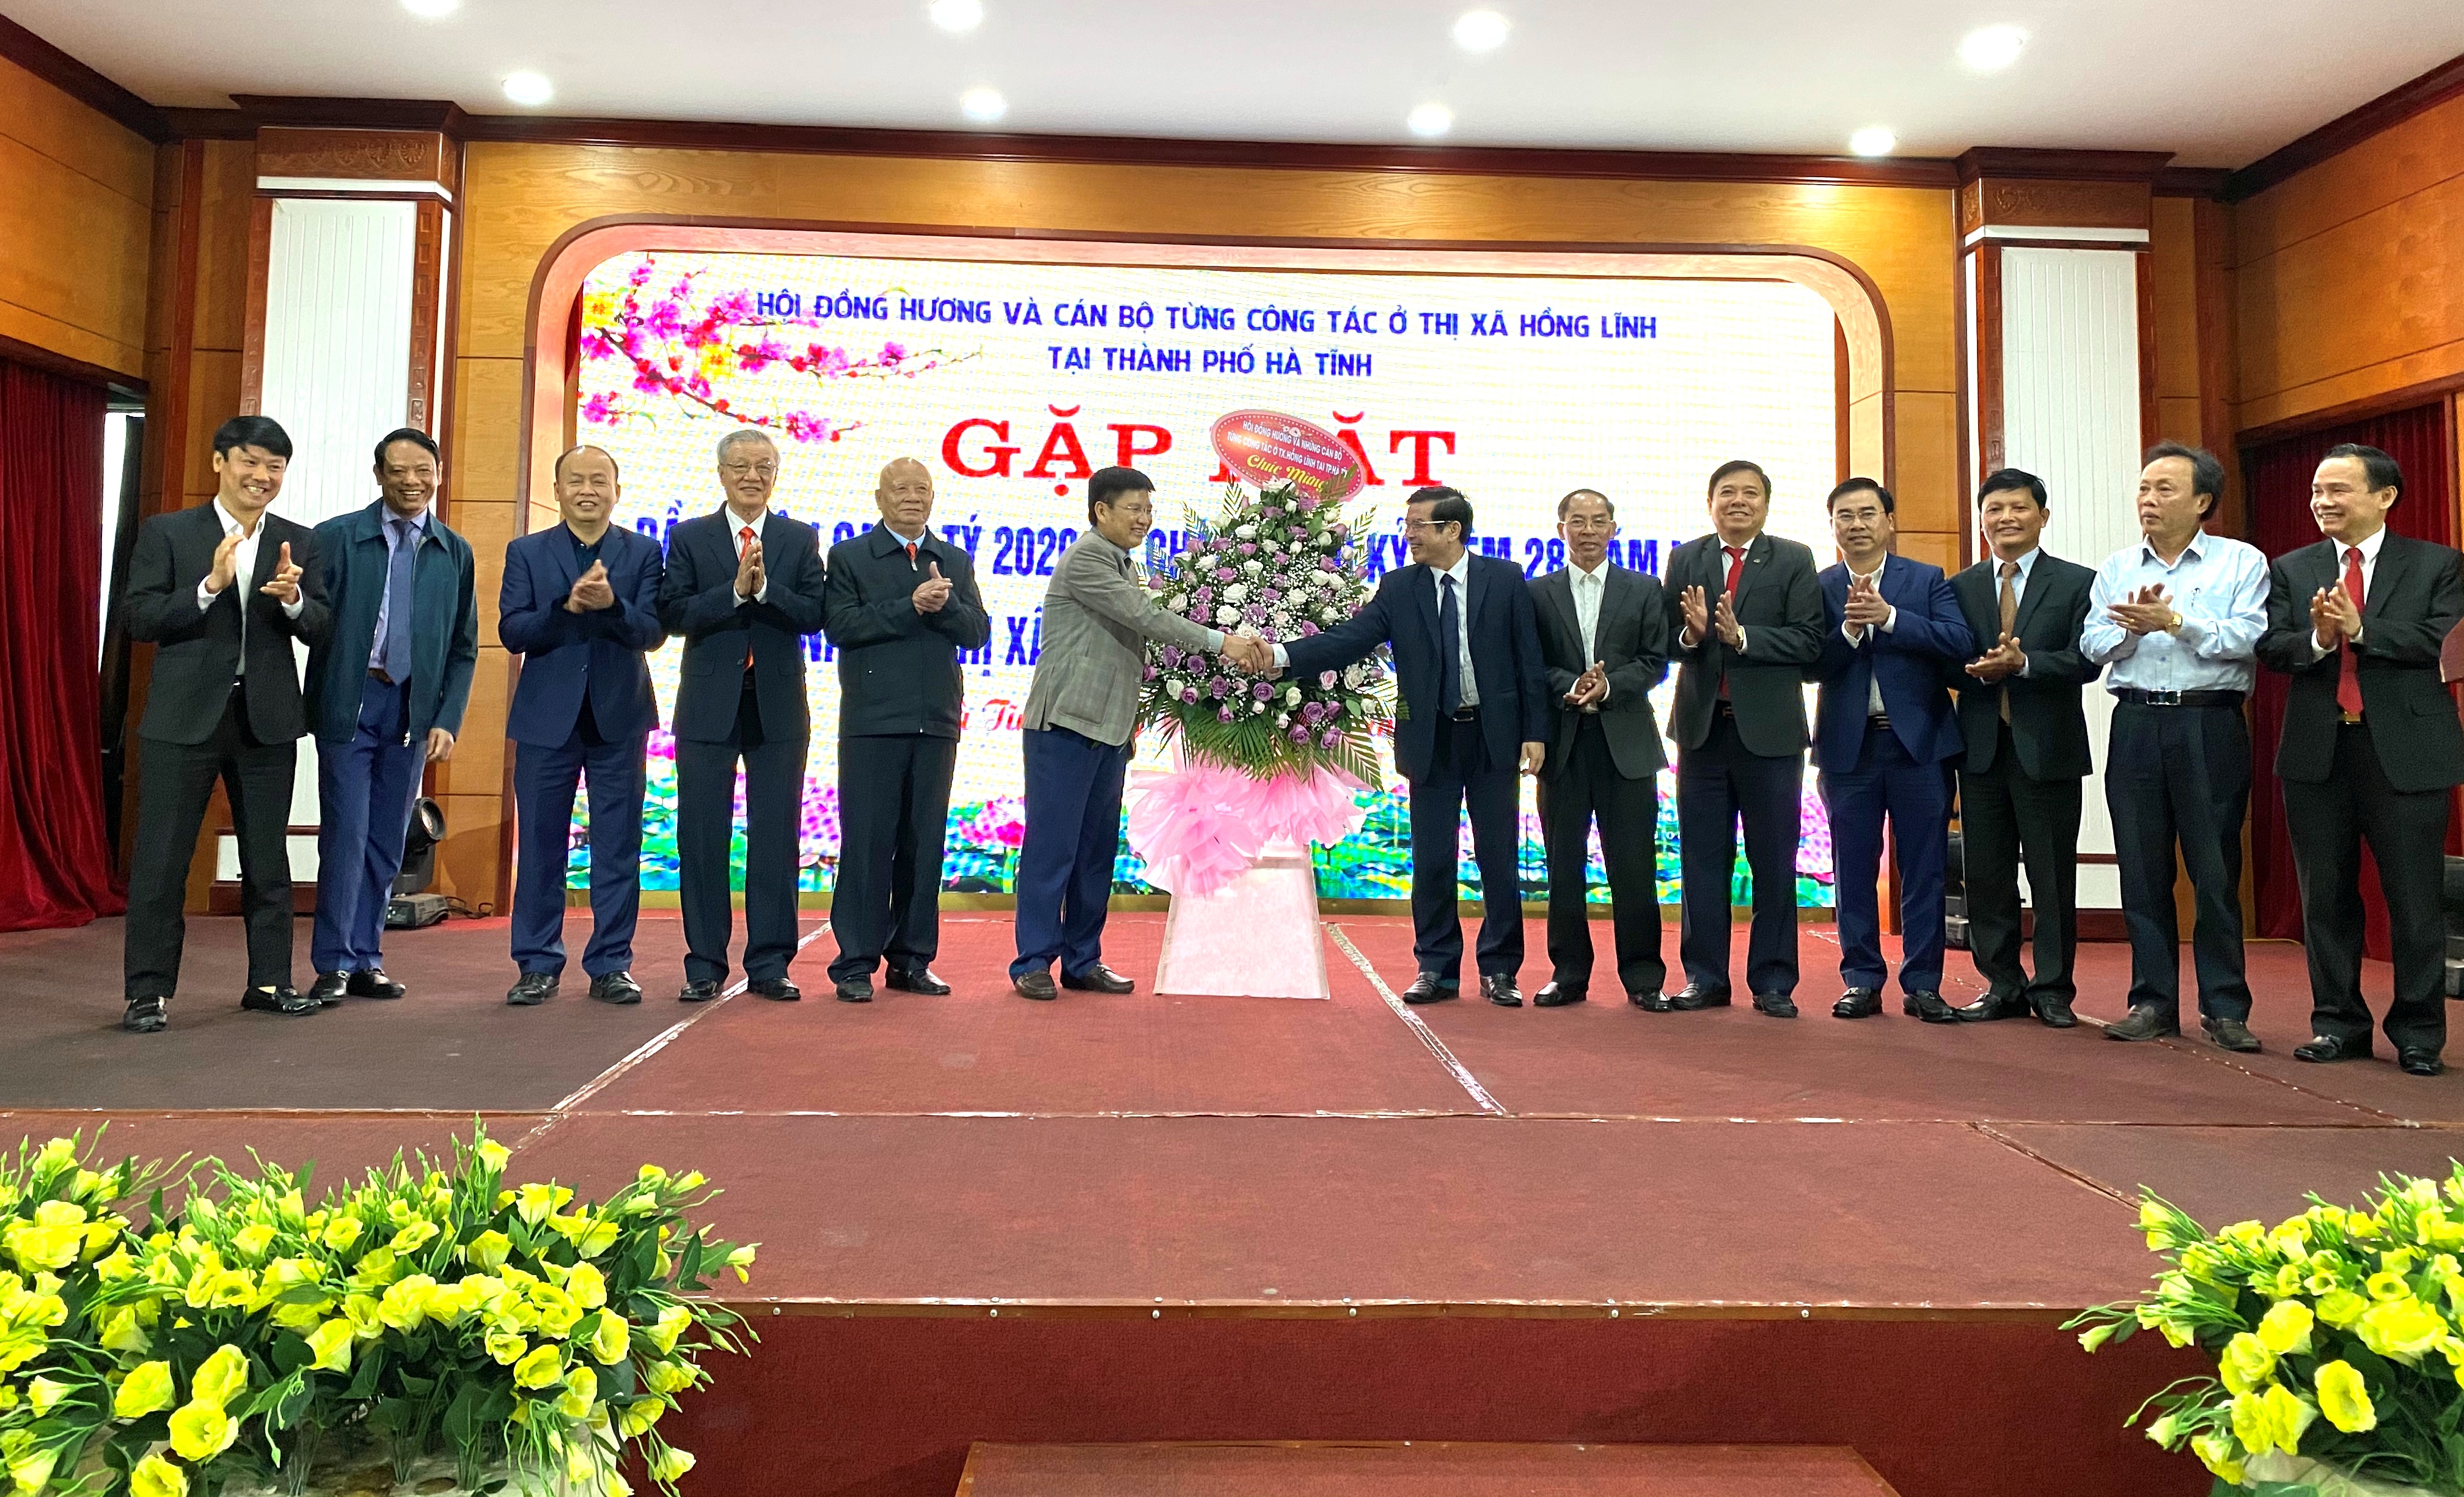 Hội đồng hương và cán bộ từng công tác ở thị xã Hồng Lĩnh tại Thành phố Hà Tĩnh gặp mặt đầu xuân Canh Tý và chào mừng 28 năm thành lập thị xã Hồng Lĩnh